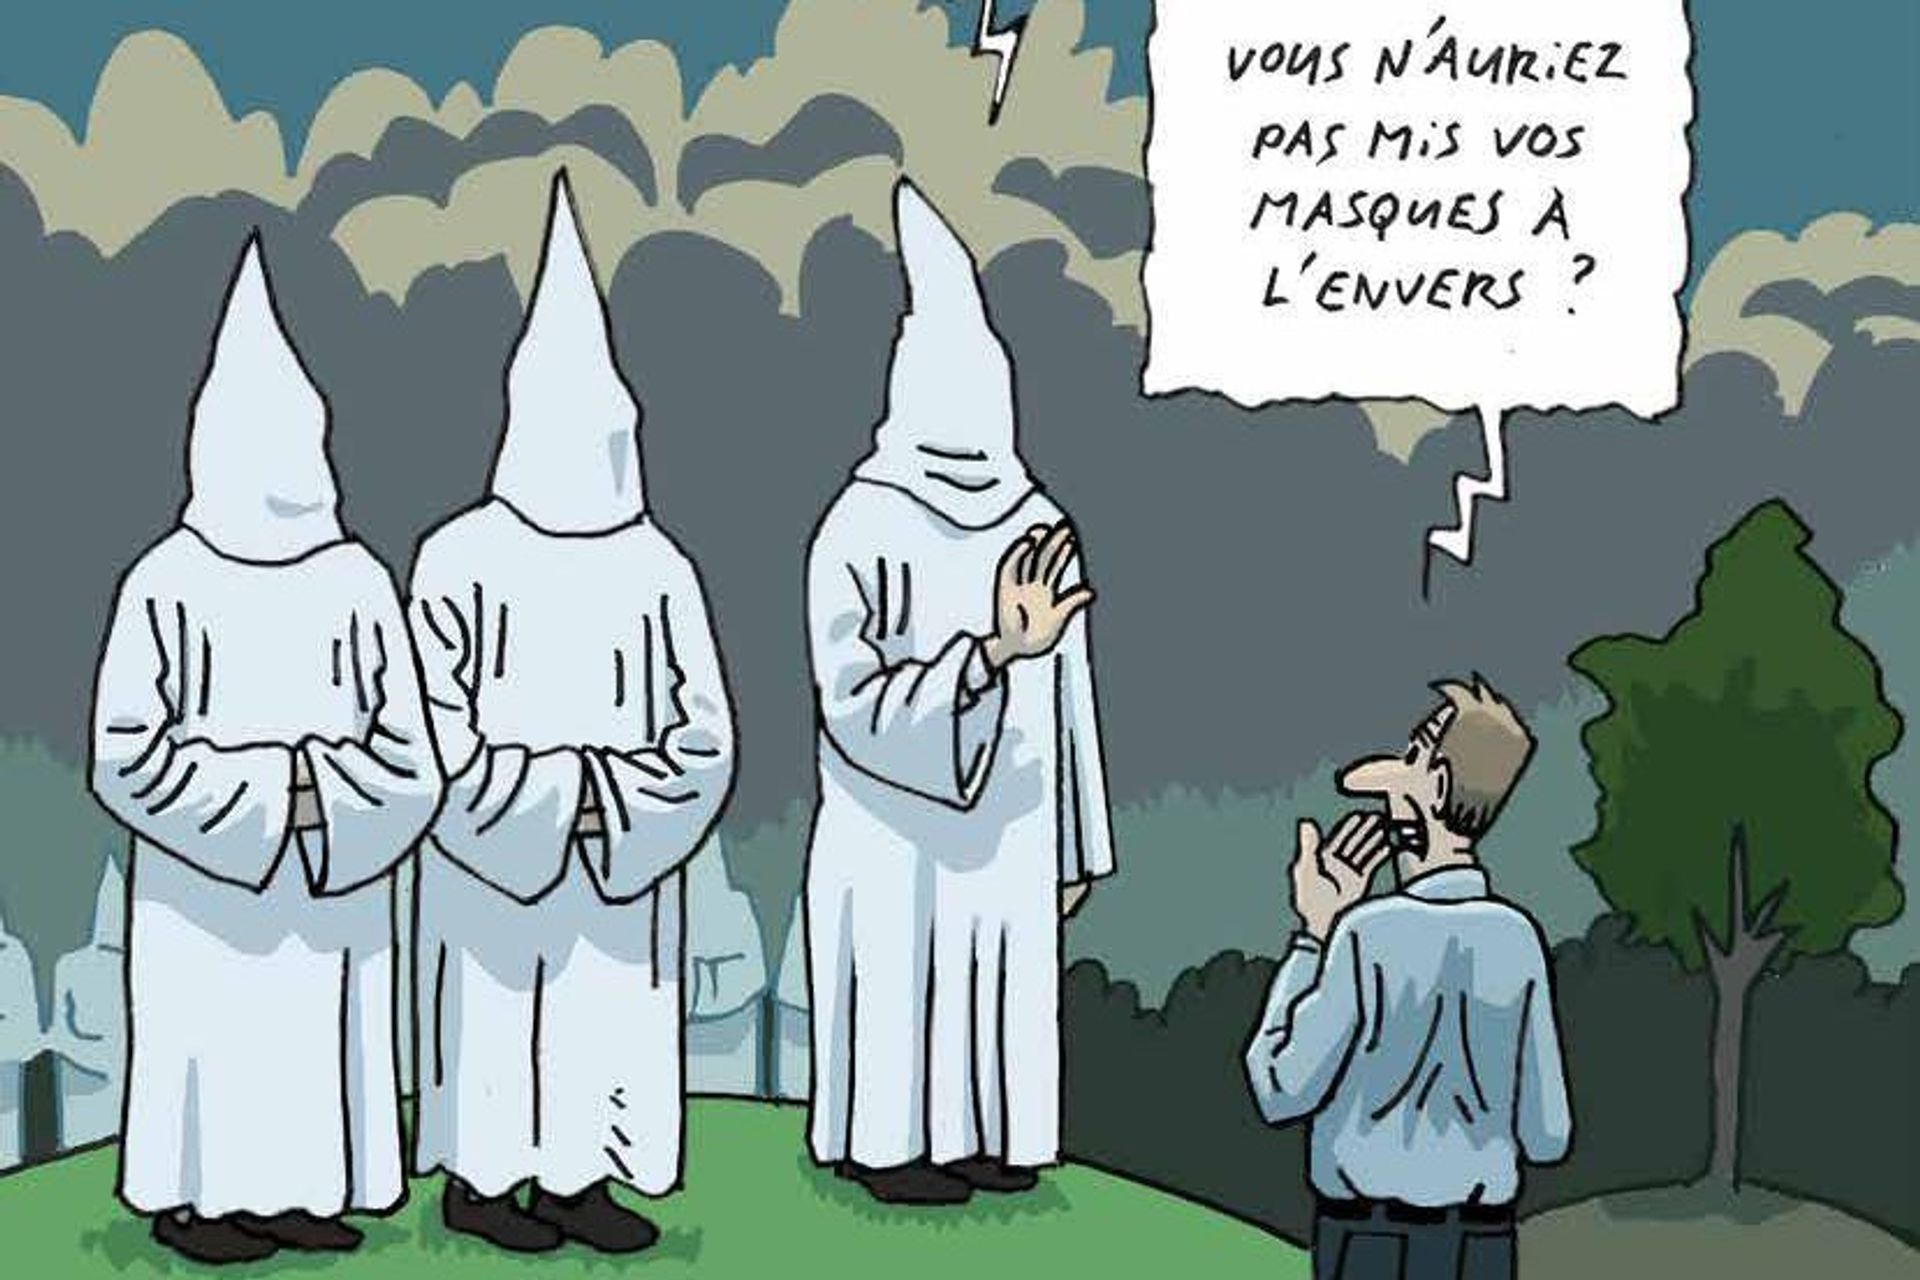 瑞士联邦反对种族主义委员会杂志第 45-2021 期中关于仇外心理、假新闻和阴谋的漫画之一